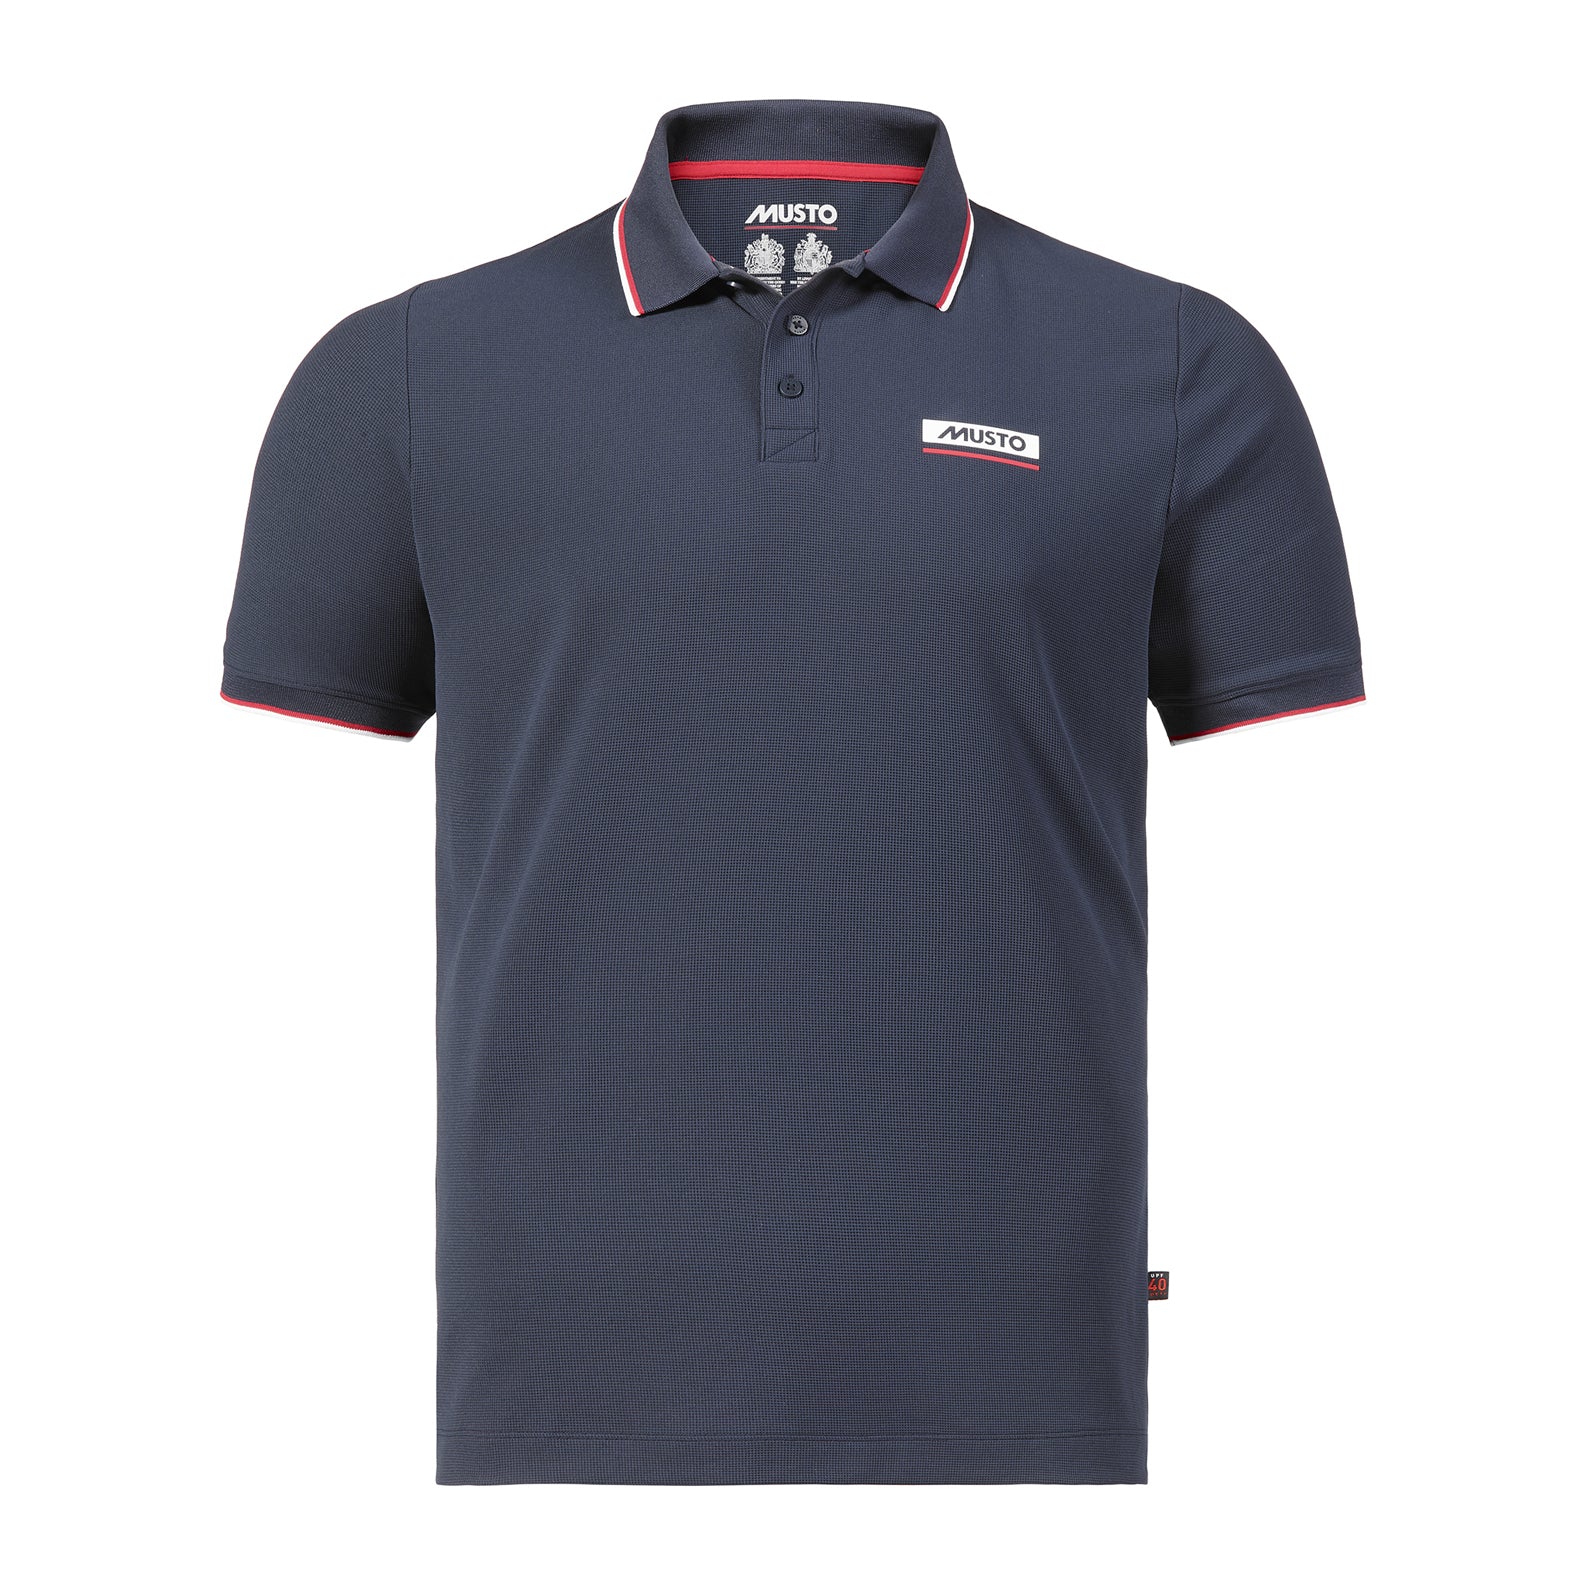 Musto-Corsica-Polo-Shirt-2.0